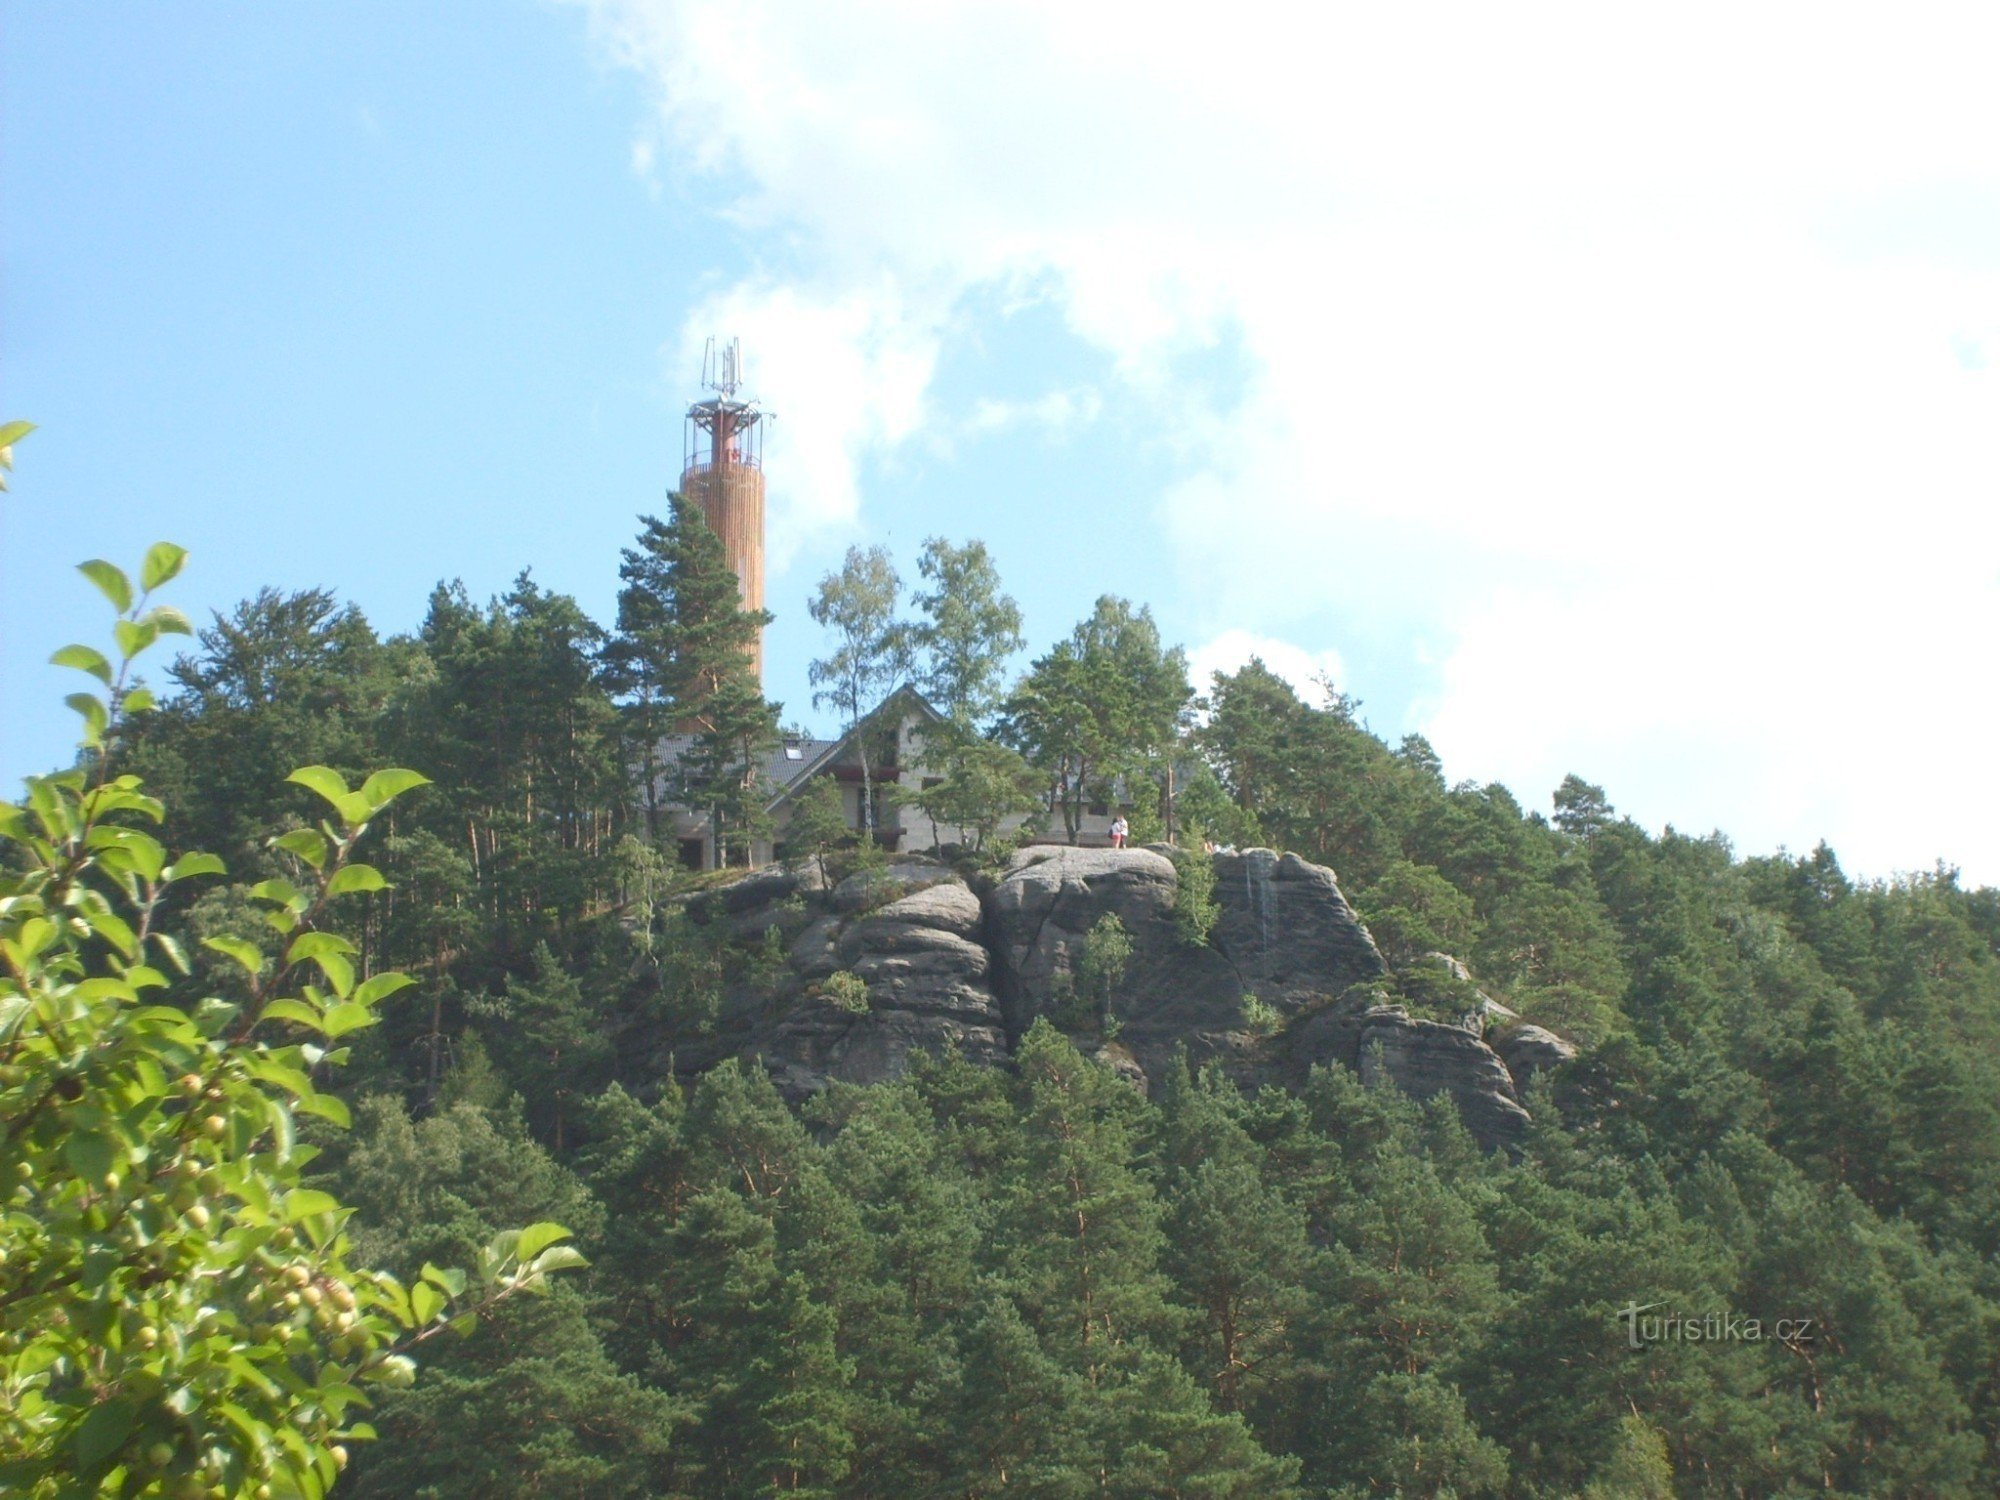 Στο Stráž, ένας νεόκτιστος πύργος επιφυλακής